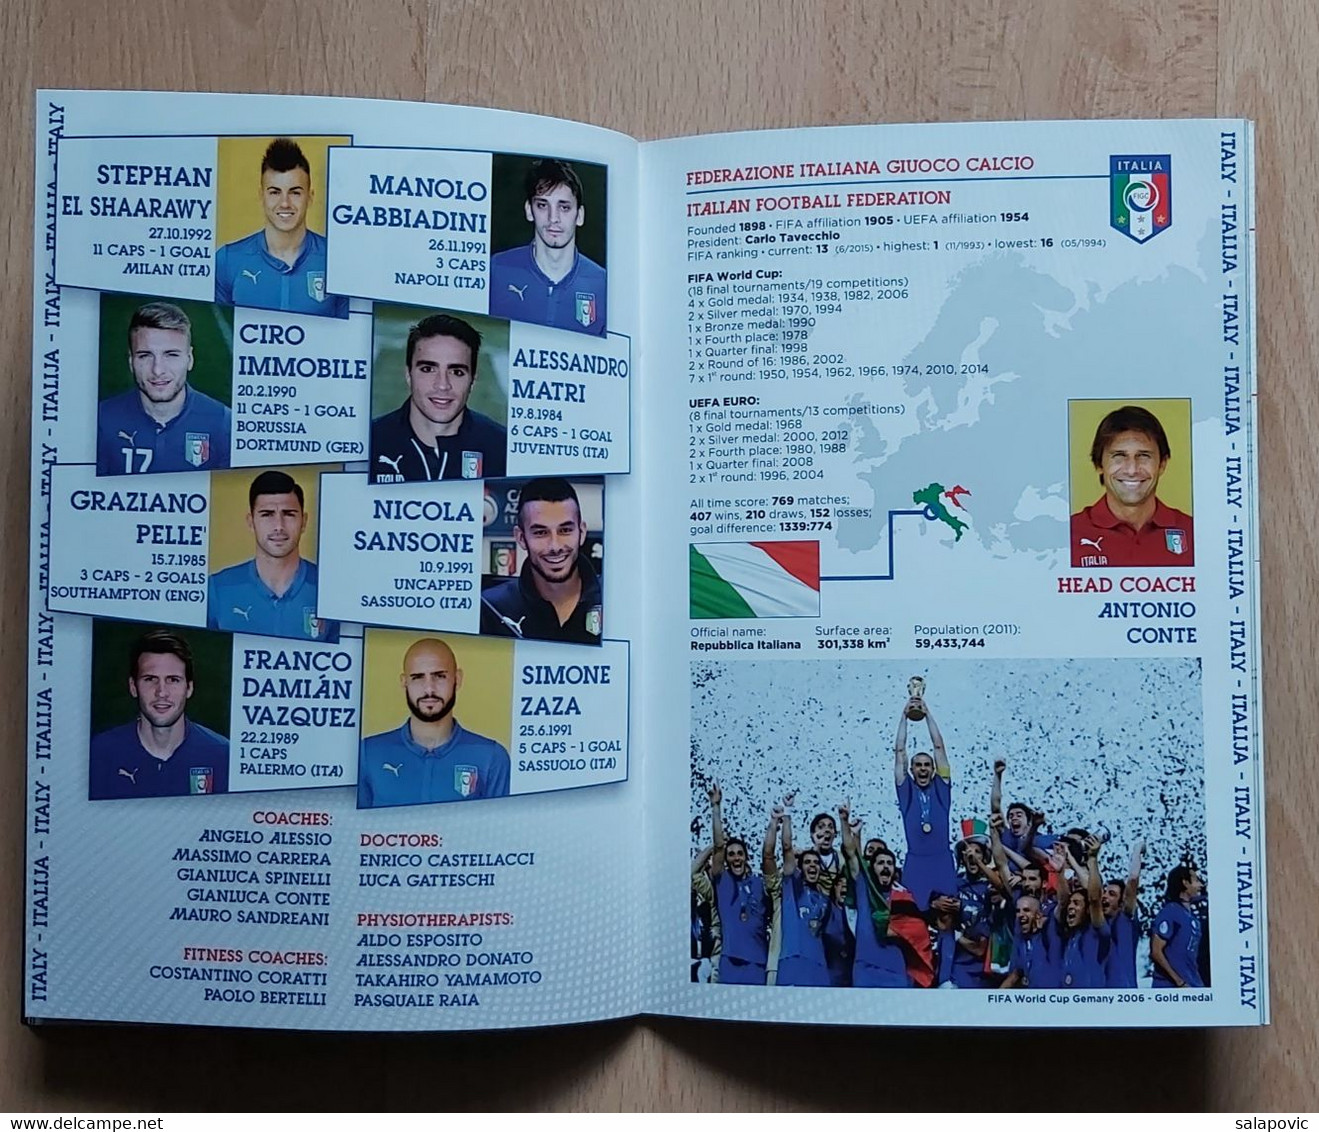 CROATIA v ITALY - 2016 UEFA EURO   FOOTBALL MATCH PROGRAM